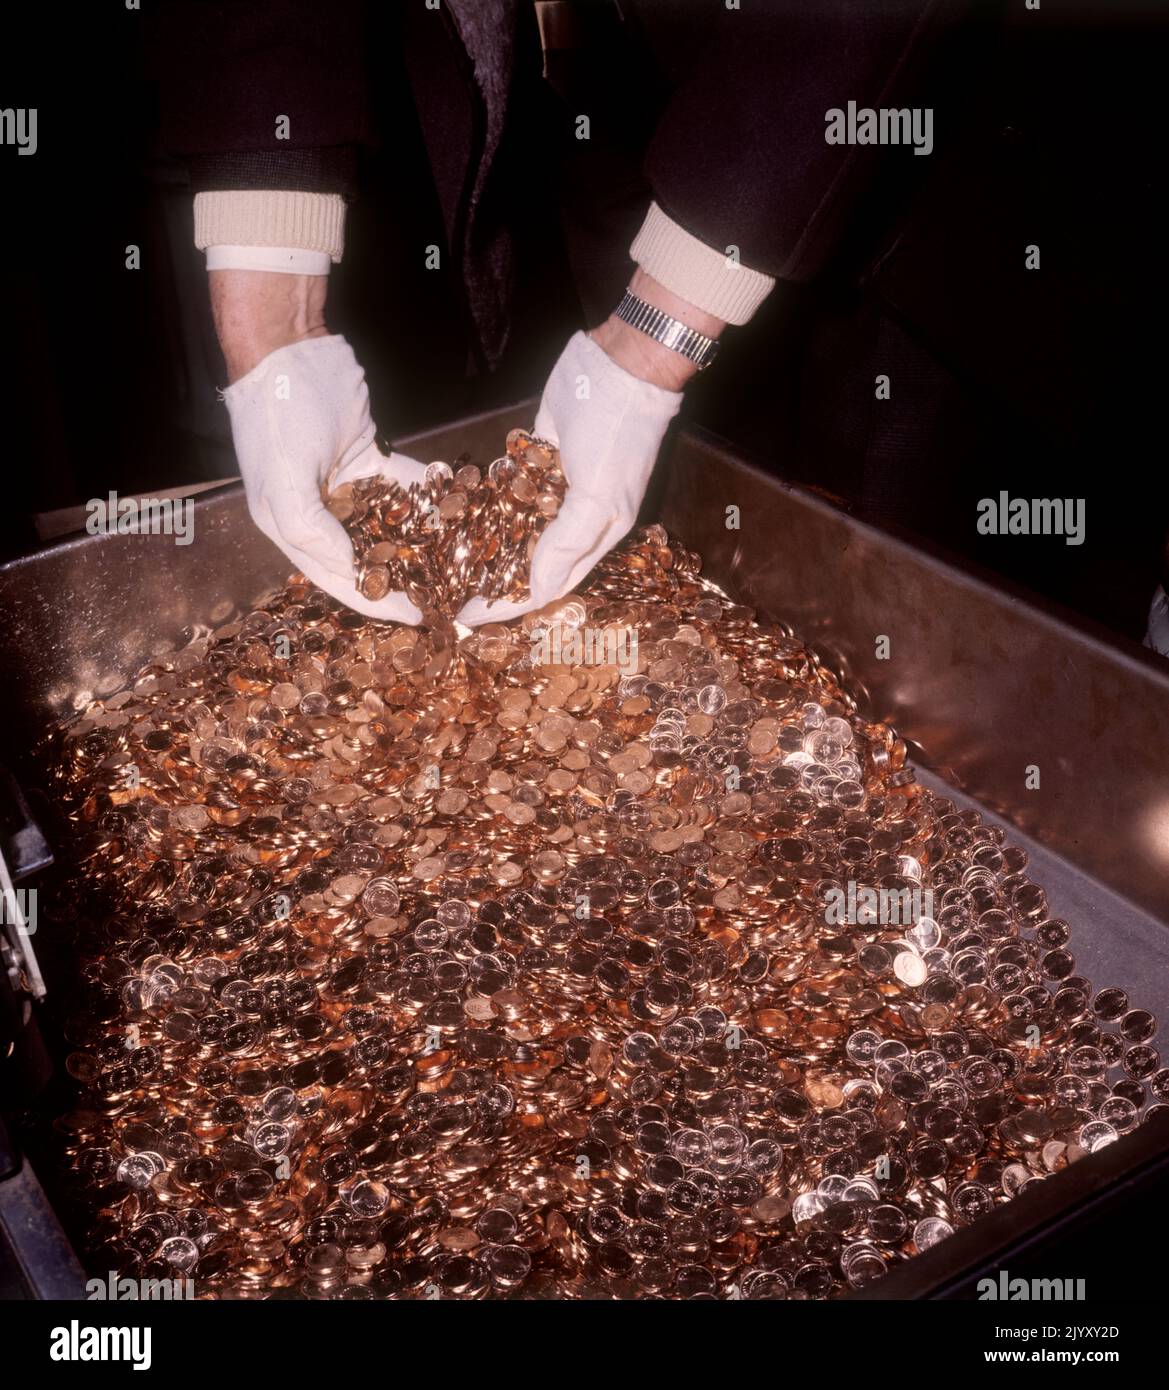 1971: Photo de dossier datée de février 1971 d'un ouvrier à la monnaie royale de Llantrisant, au sud du pays de Galles, mettant ses mains gantées dans une masse de pièces de clôture en cuivre nouvellement taillées. Date de publication : jeudi 8 septembre 2022. Banque D'Images